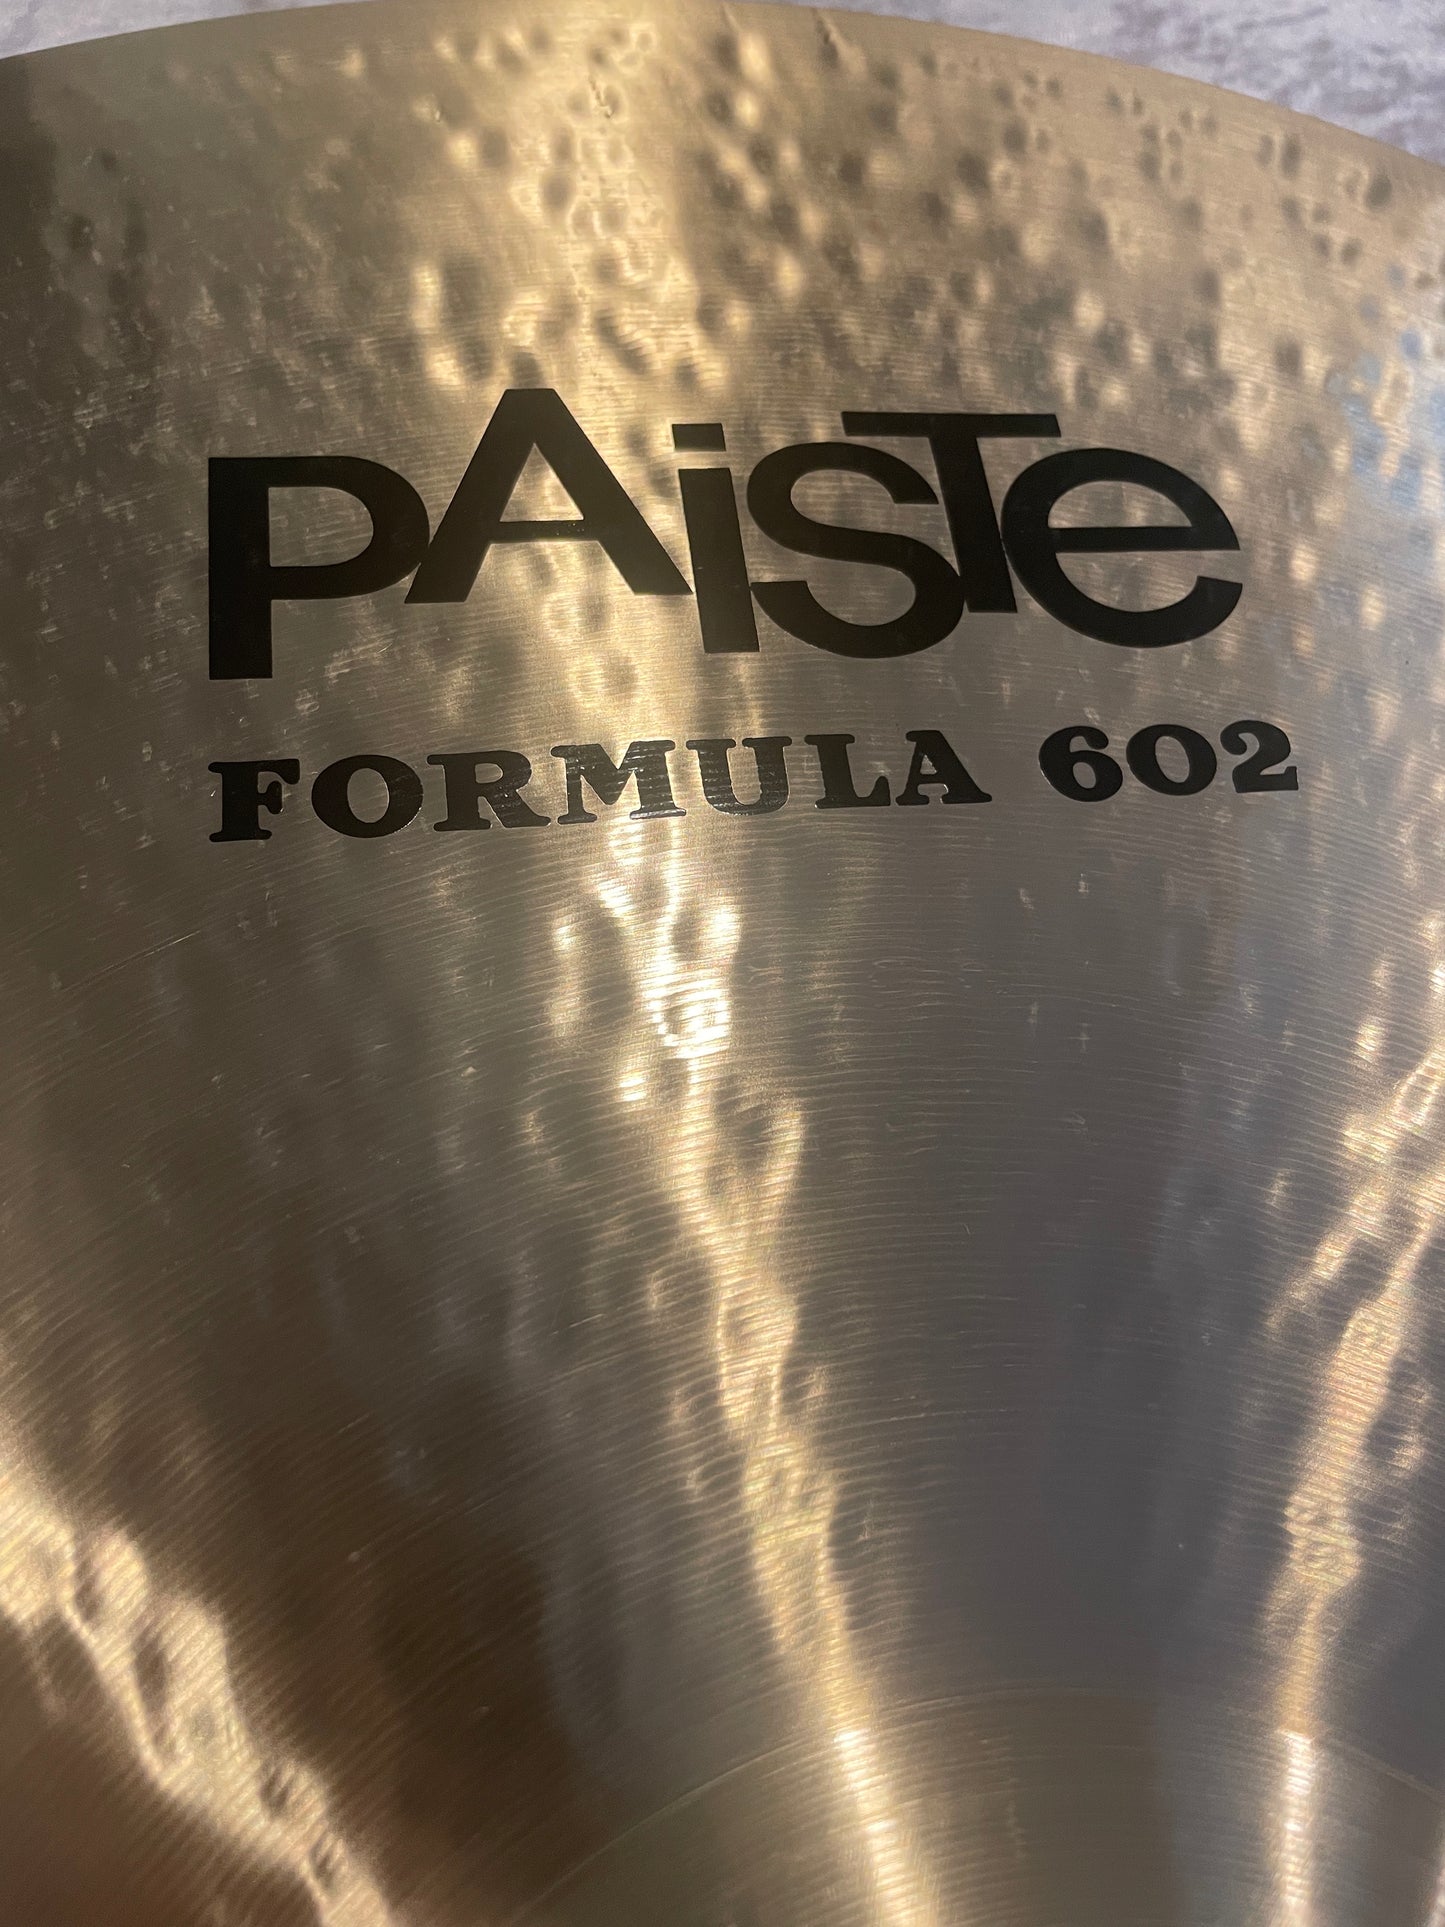 22" Paiste Formula 602 Modern Essentials Ride Cymbal 3040g